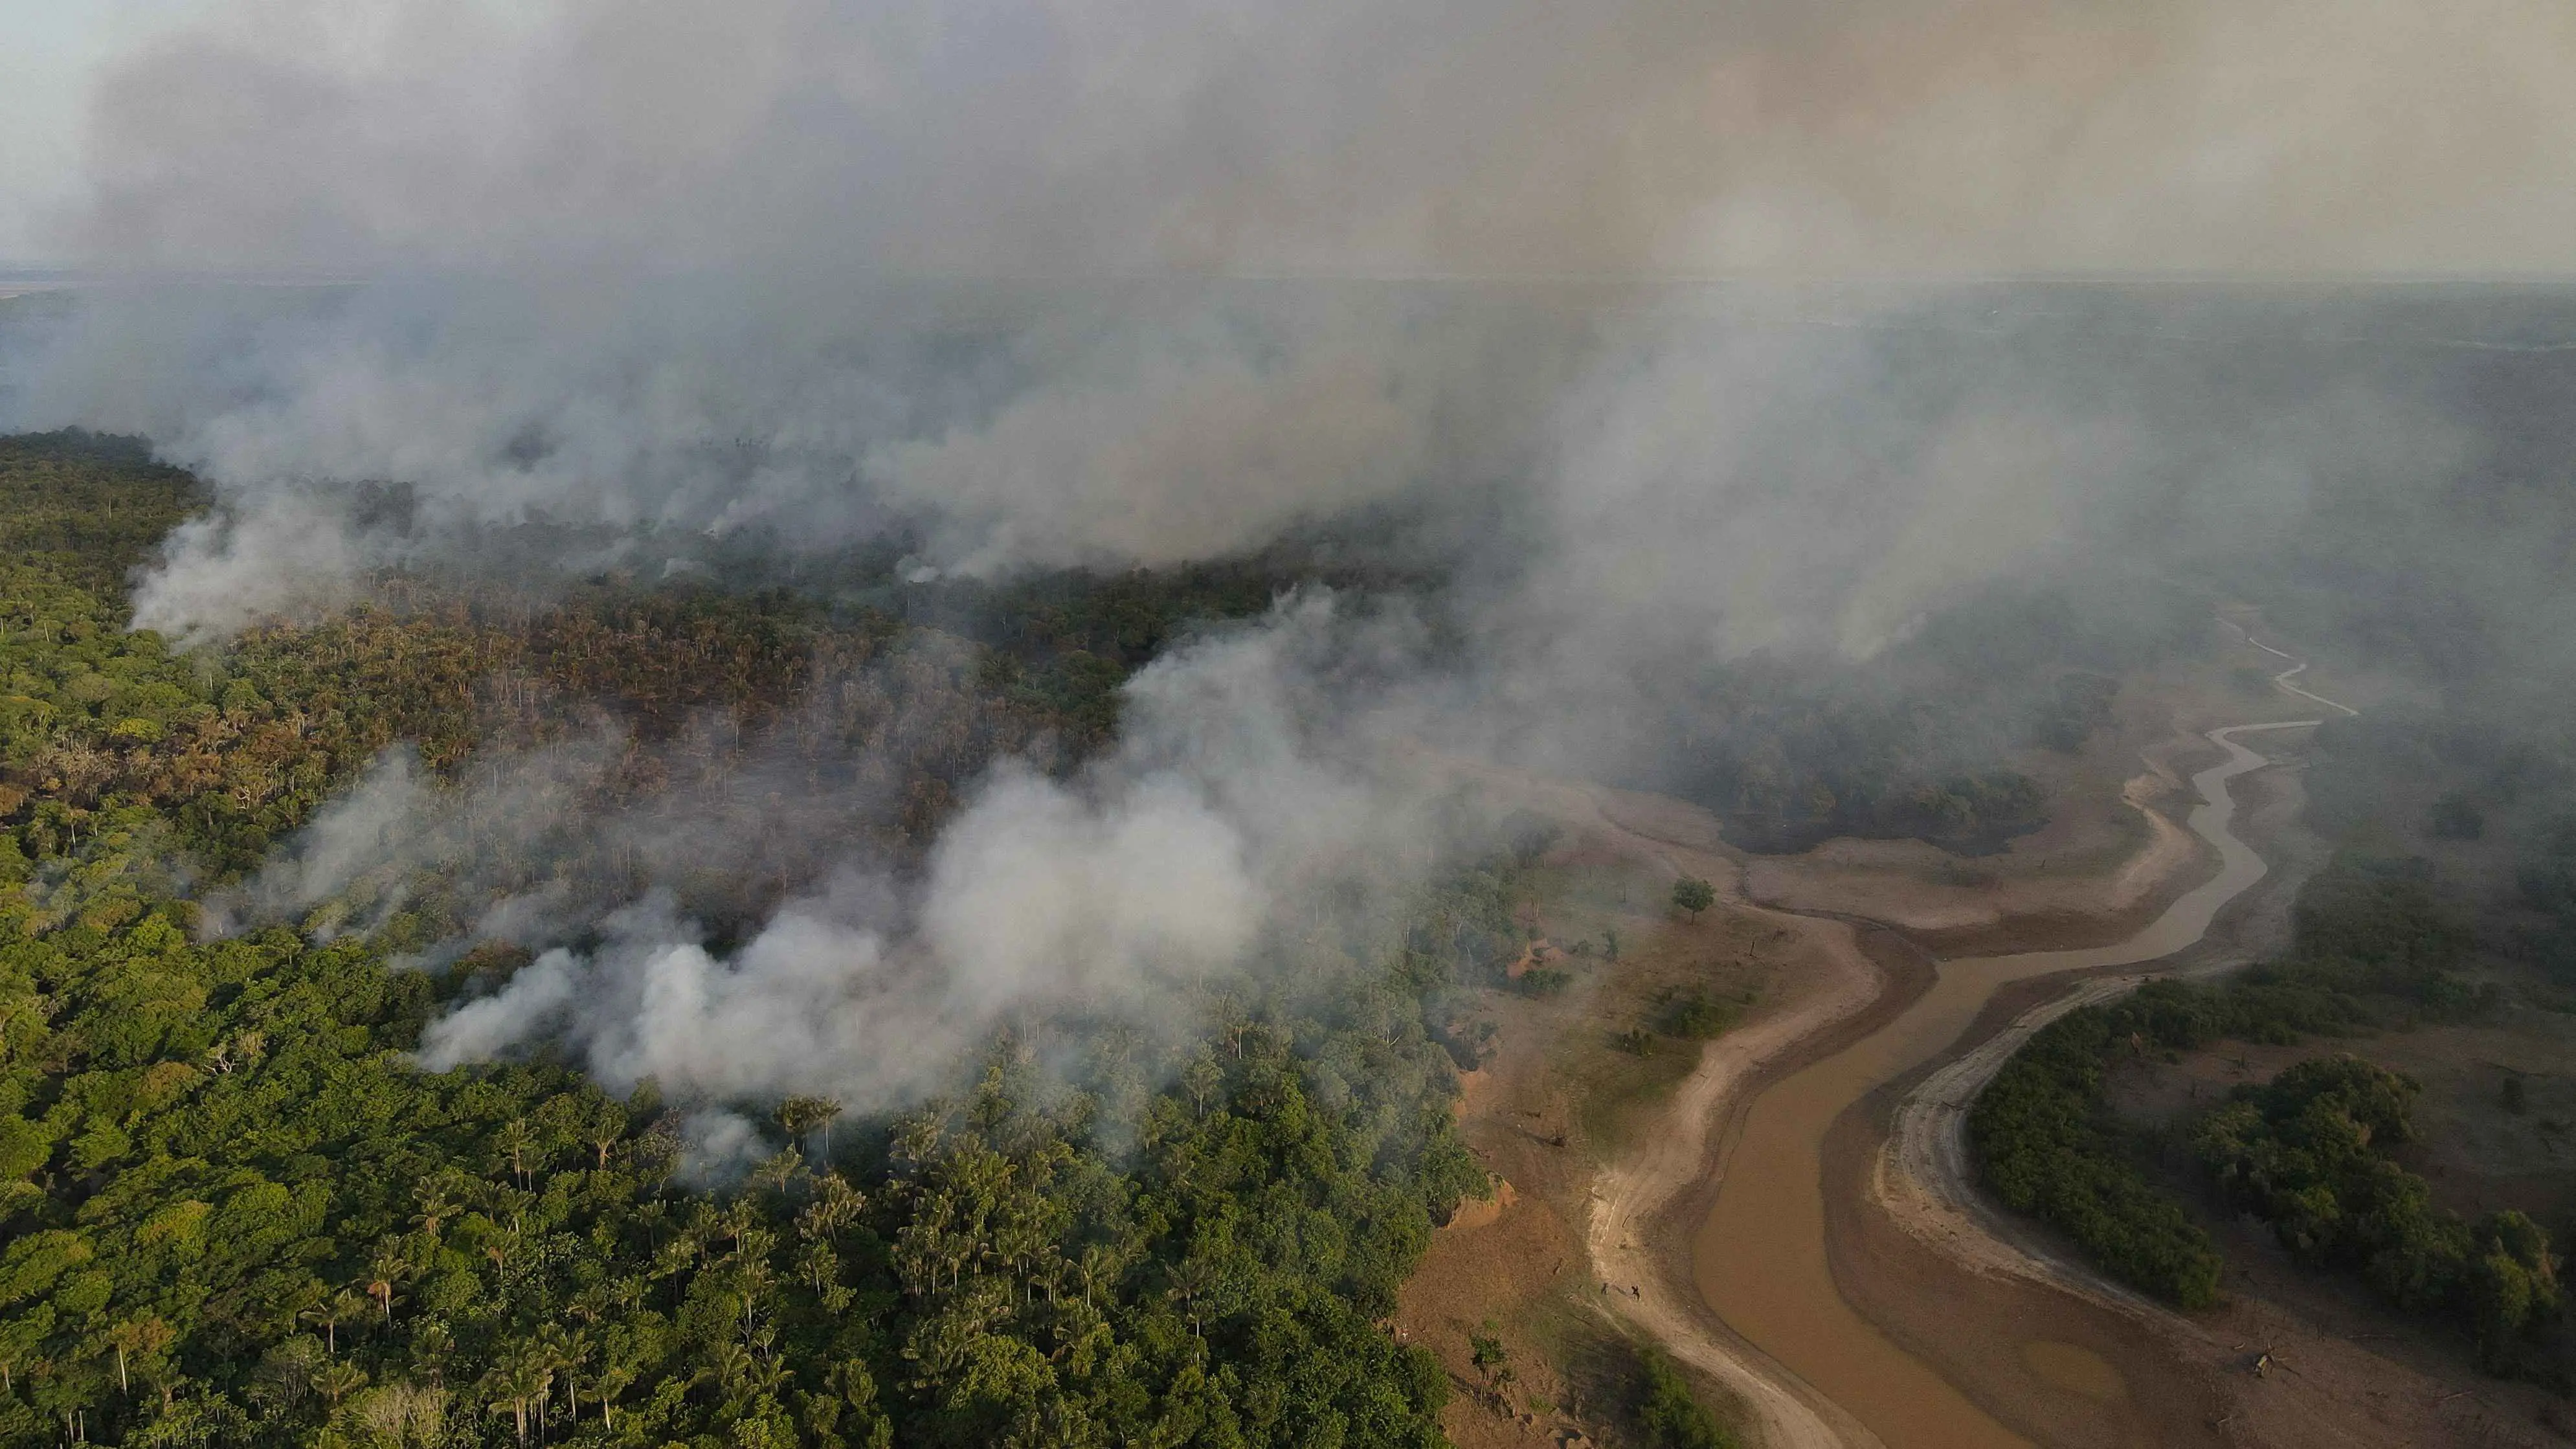 لوموند: الأمازون المطيرة تواجه أزمة حرائق غير مسبوقة